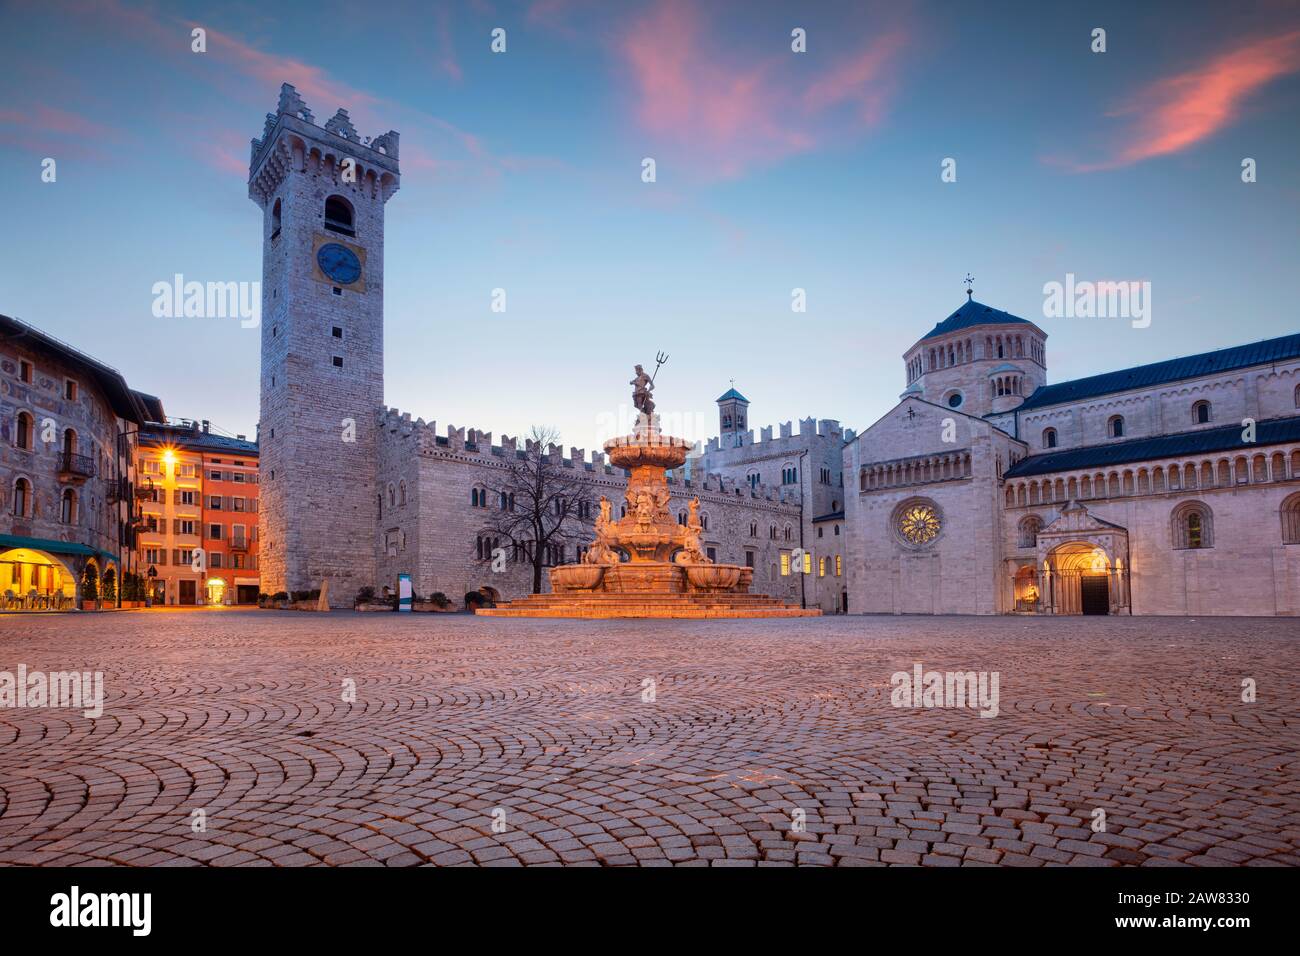 Trento, Italia. Immagine del paesaggio urbano della città storica di Trento, Trentino, Italia durante l'ora blu del crepuscolo. Foto Stock